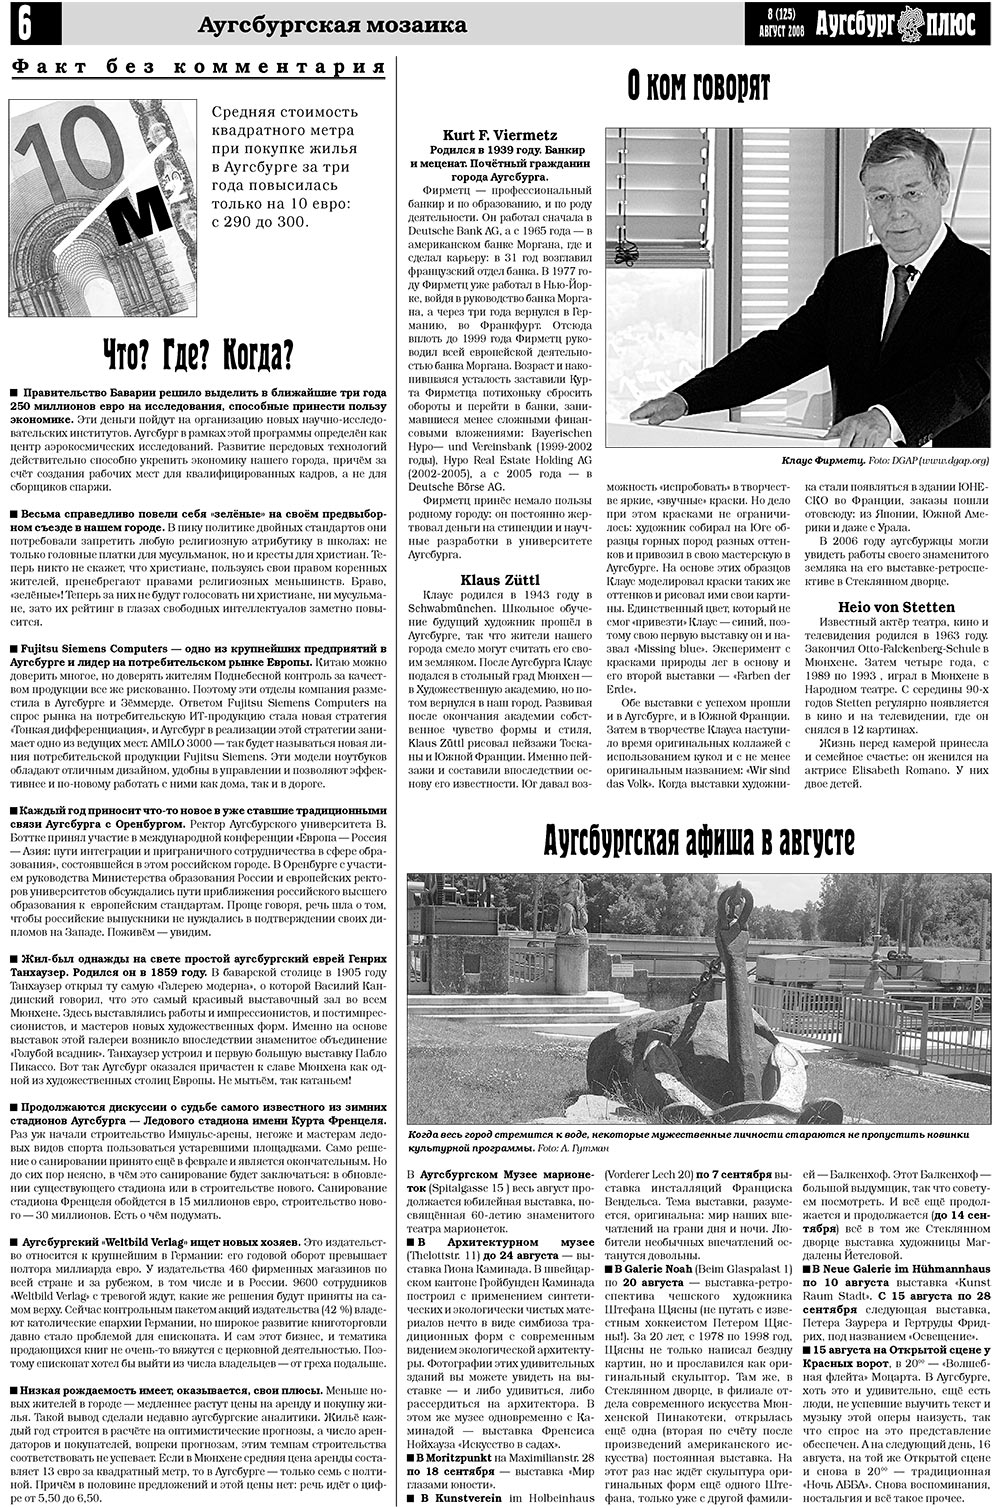 Германия плюс (газета). 2008 год, номер 8, стр. 8